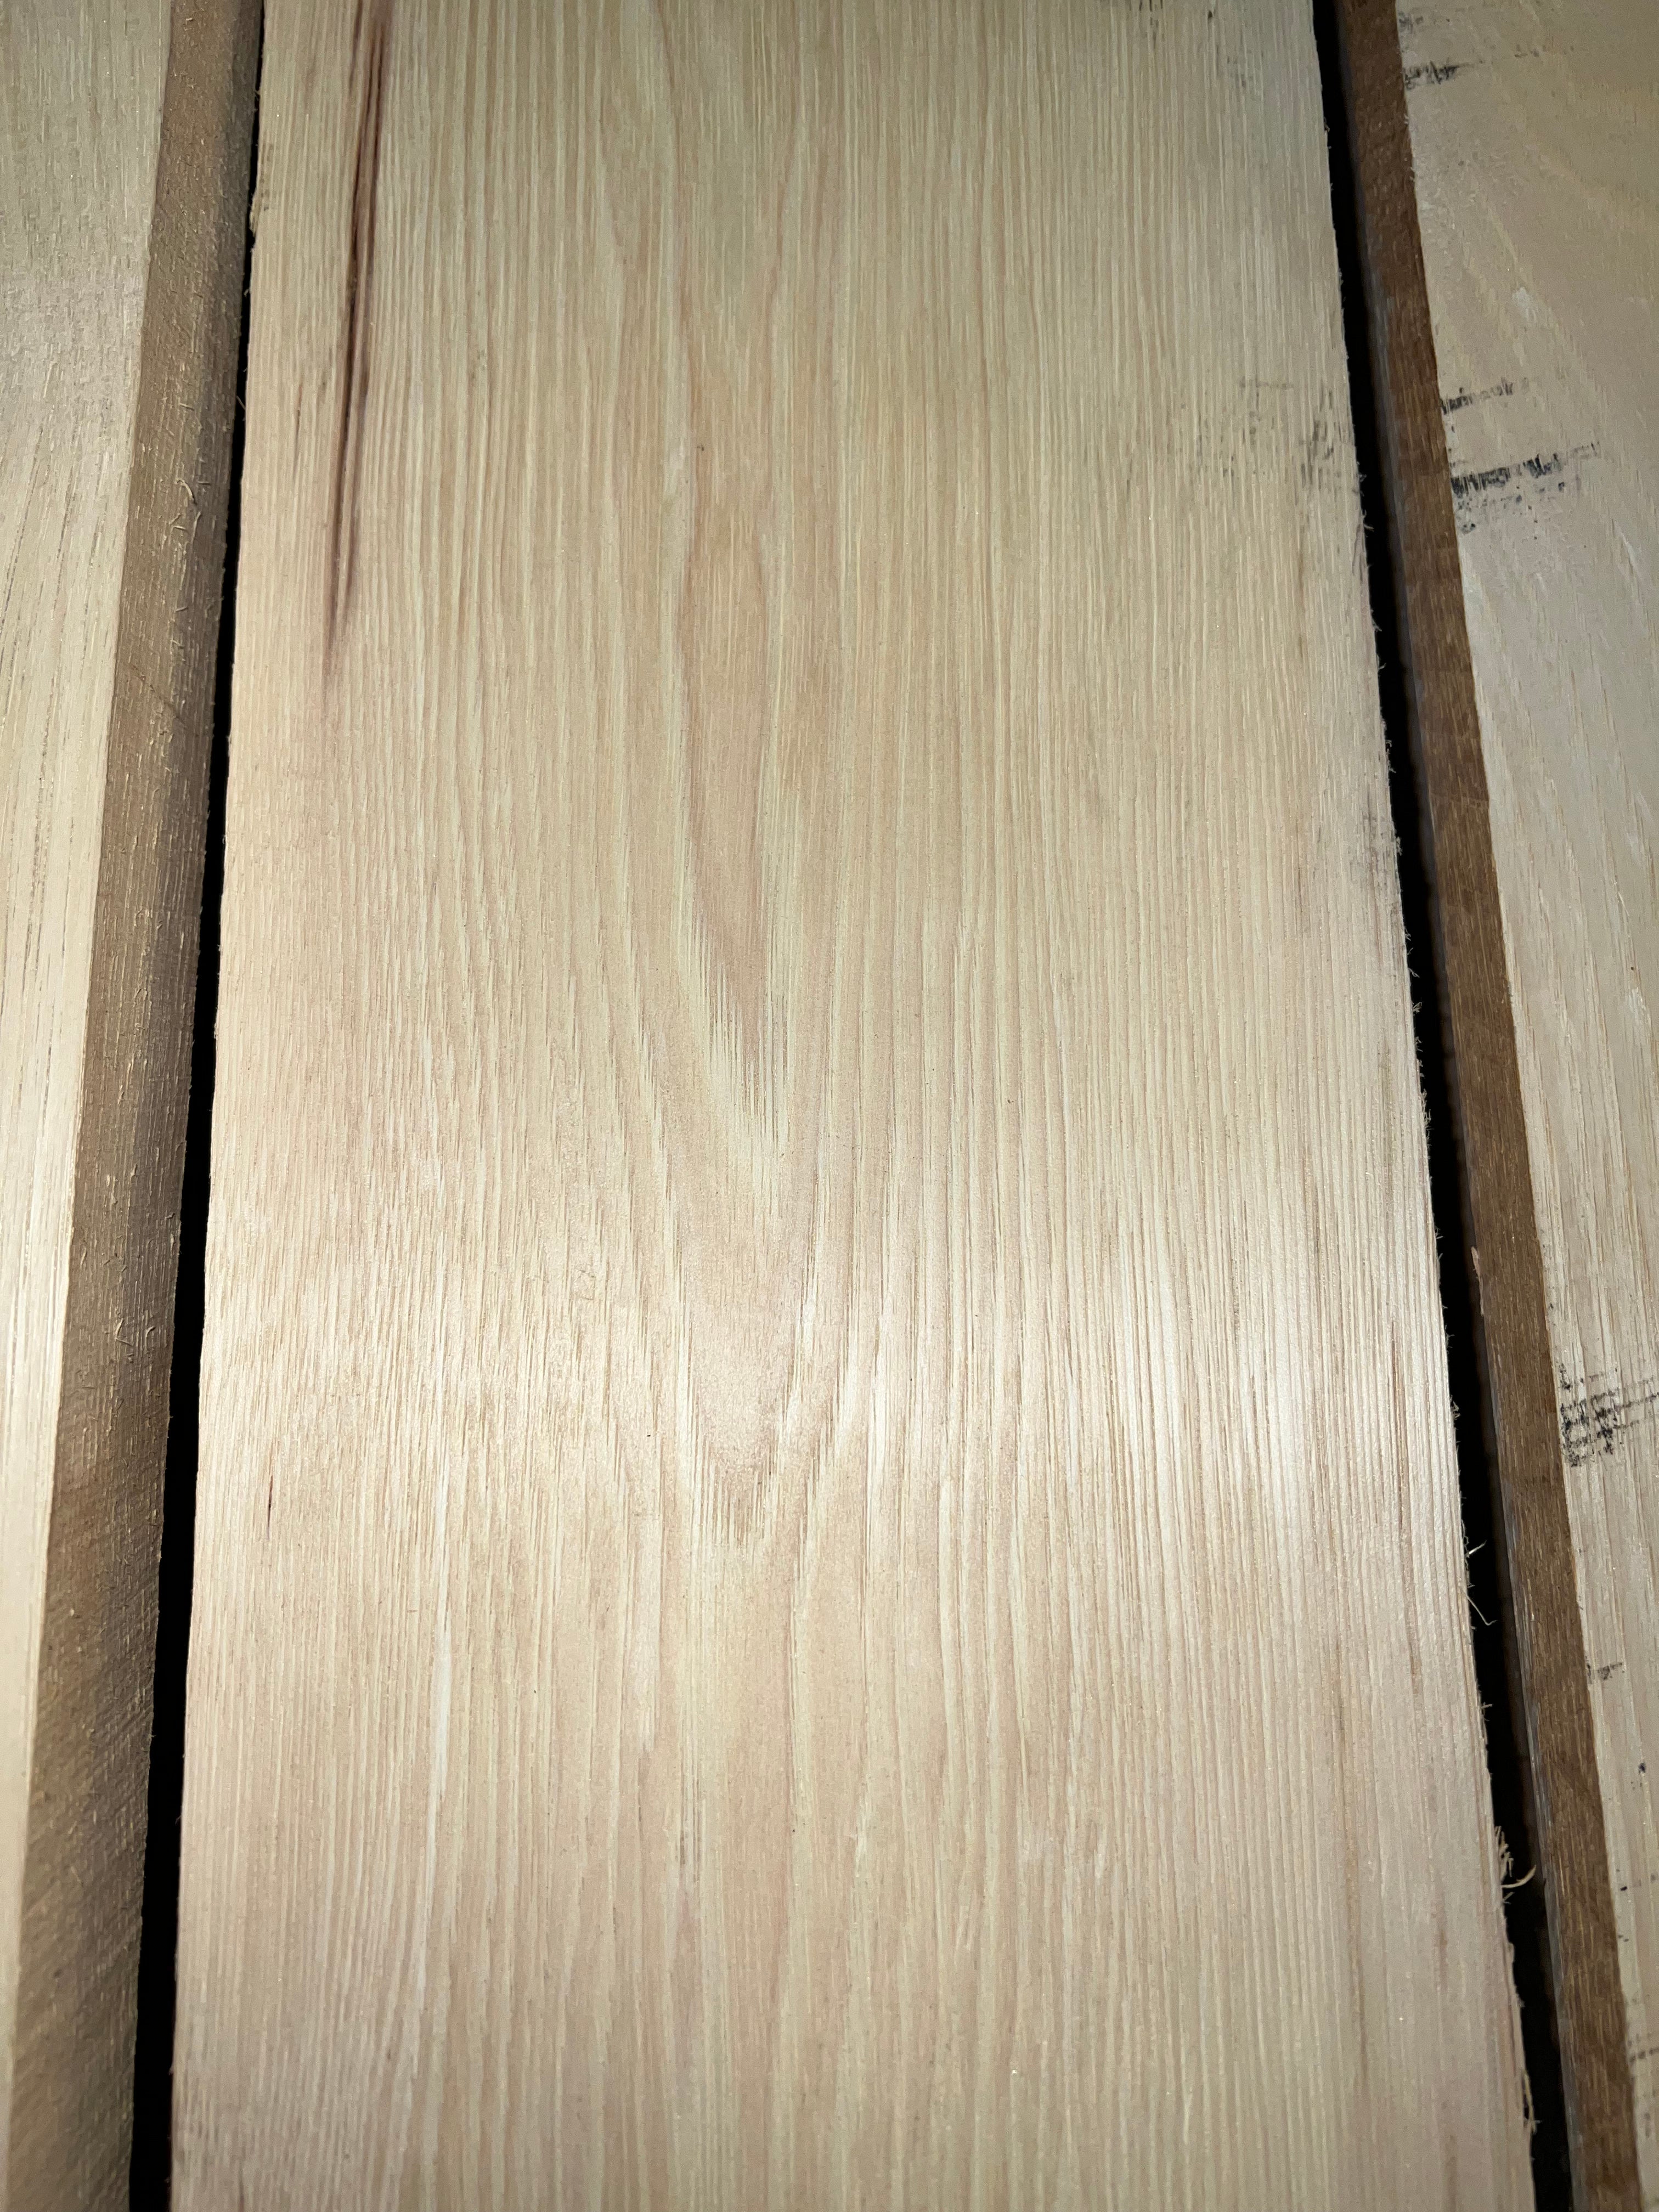 White Ash Lumber FAS Grade